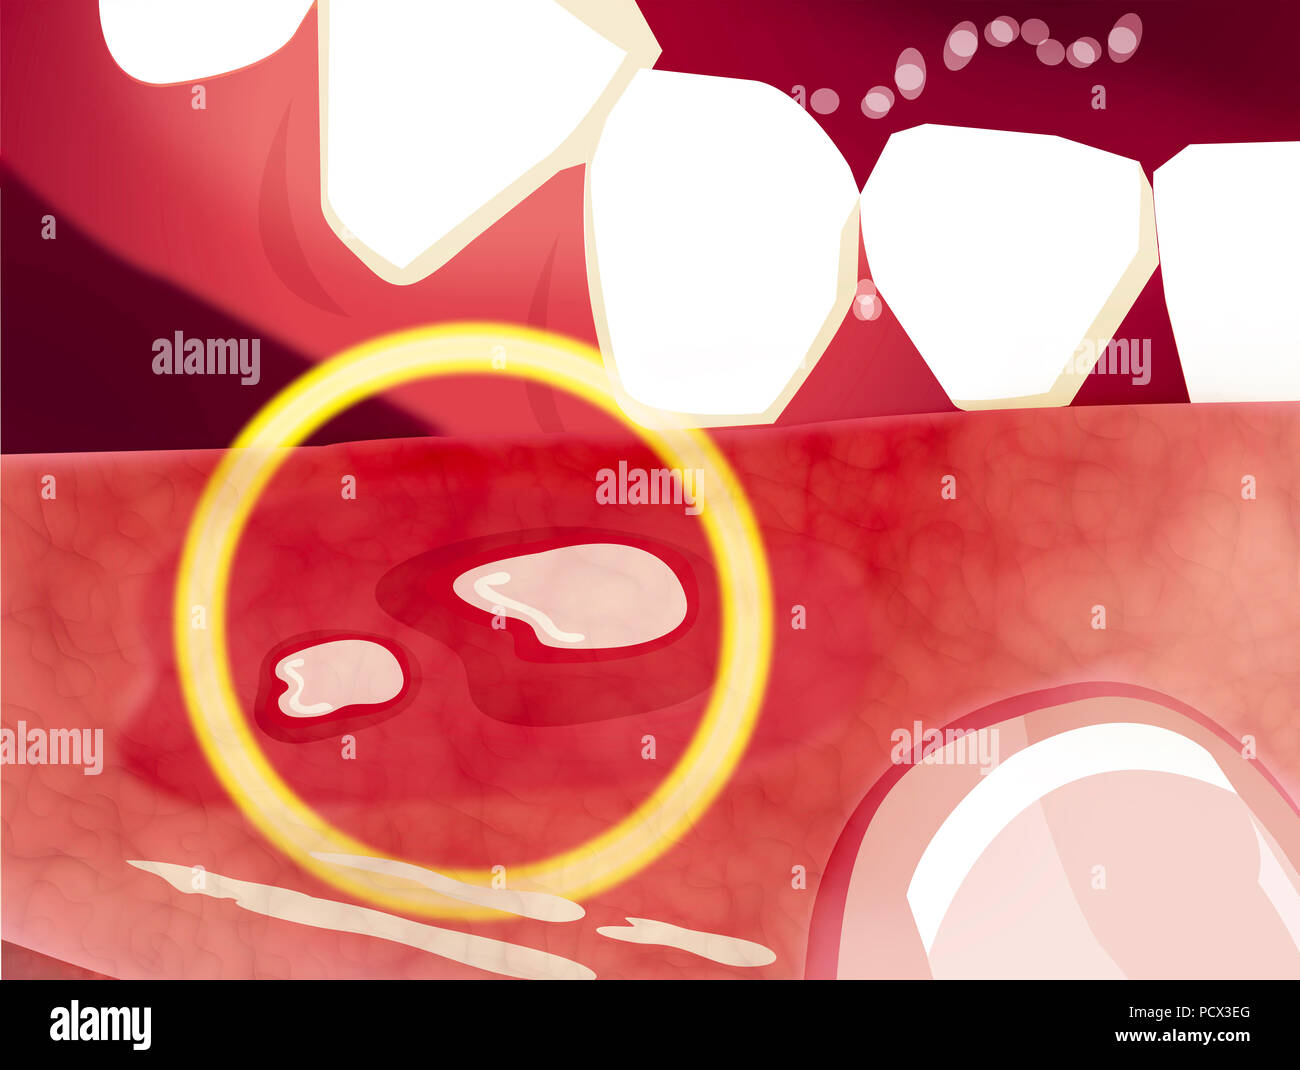 Le stomatiti aftose è una condizione comune caratterizzato dalla ripetuta la formazione di tumori benigni e non contagiosa ulcere della bocca. Afte Foto Stock